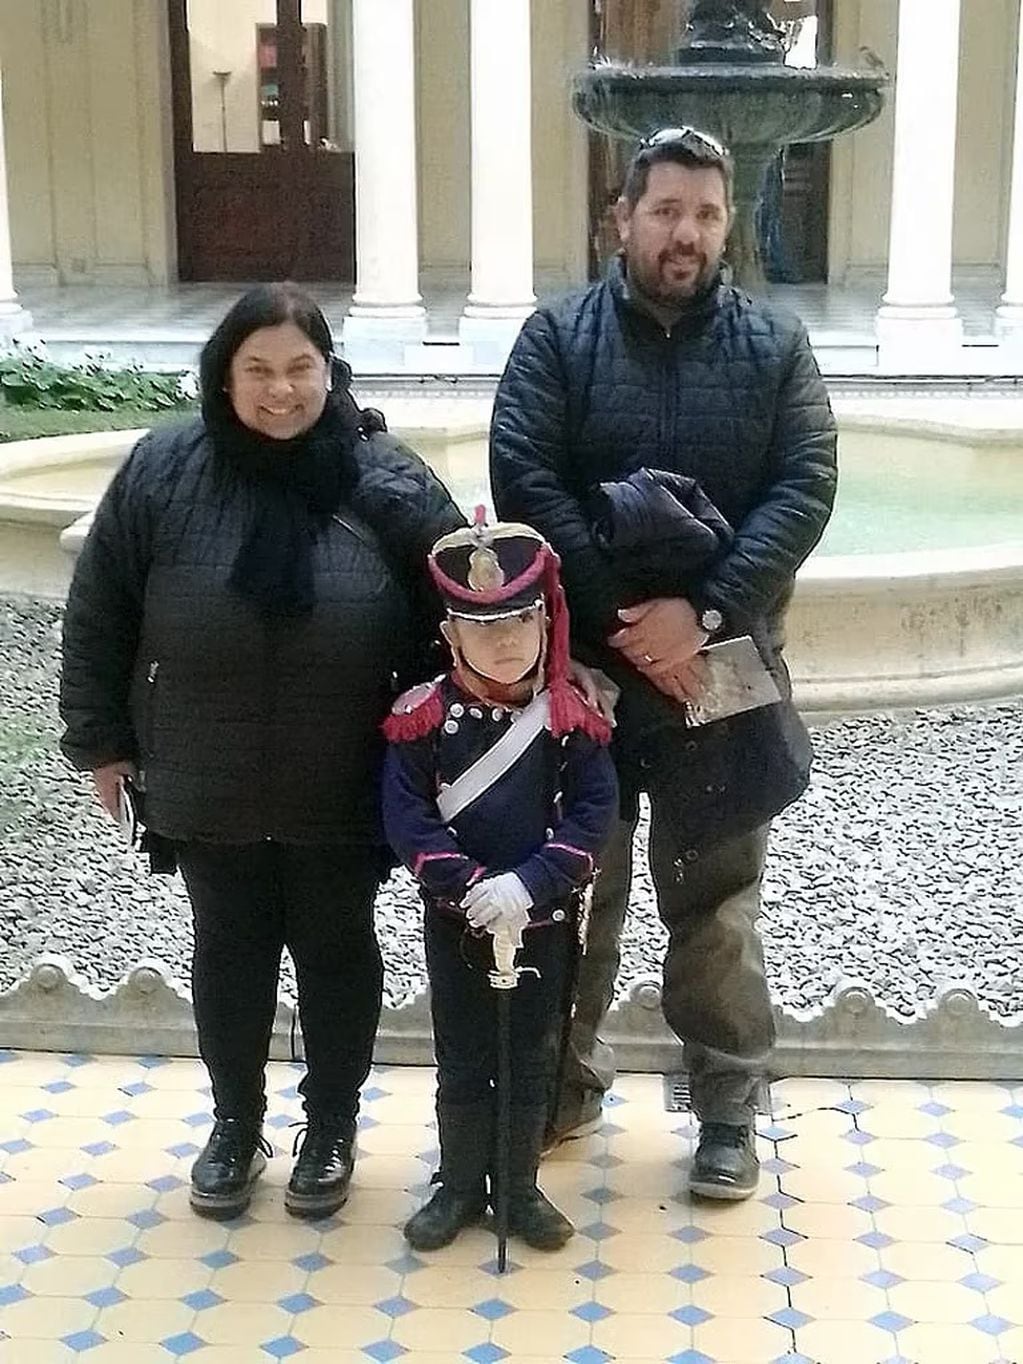 Un nene cumplió el sueño de ser granadero y homenajeó a San Martín en Casa Rosada (Gentileza)